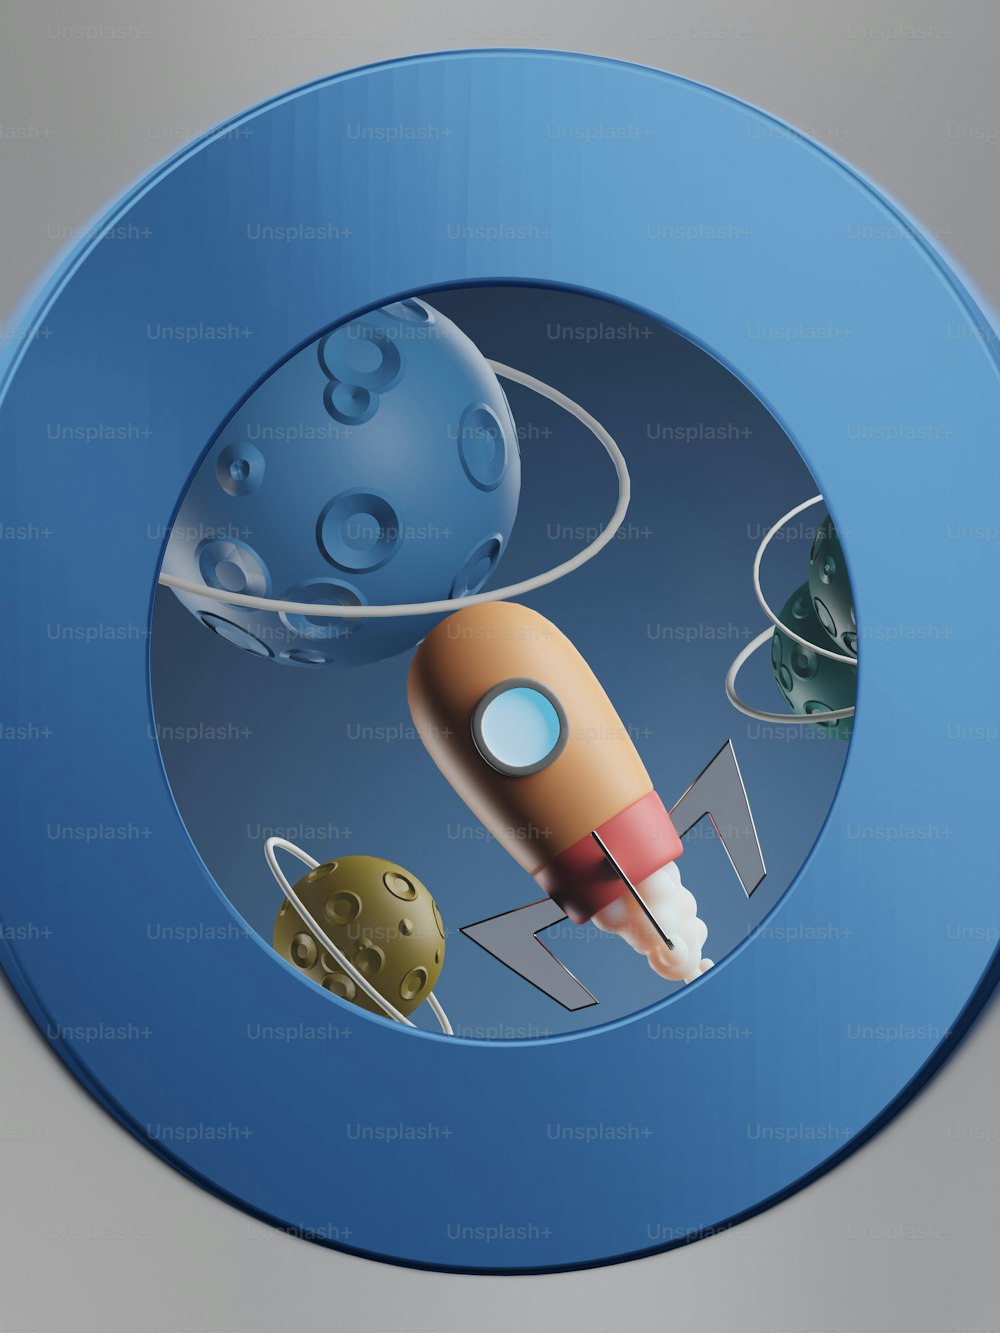 로켓과 행성 그림이있는 파란색 버튼